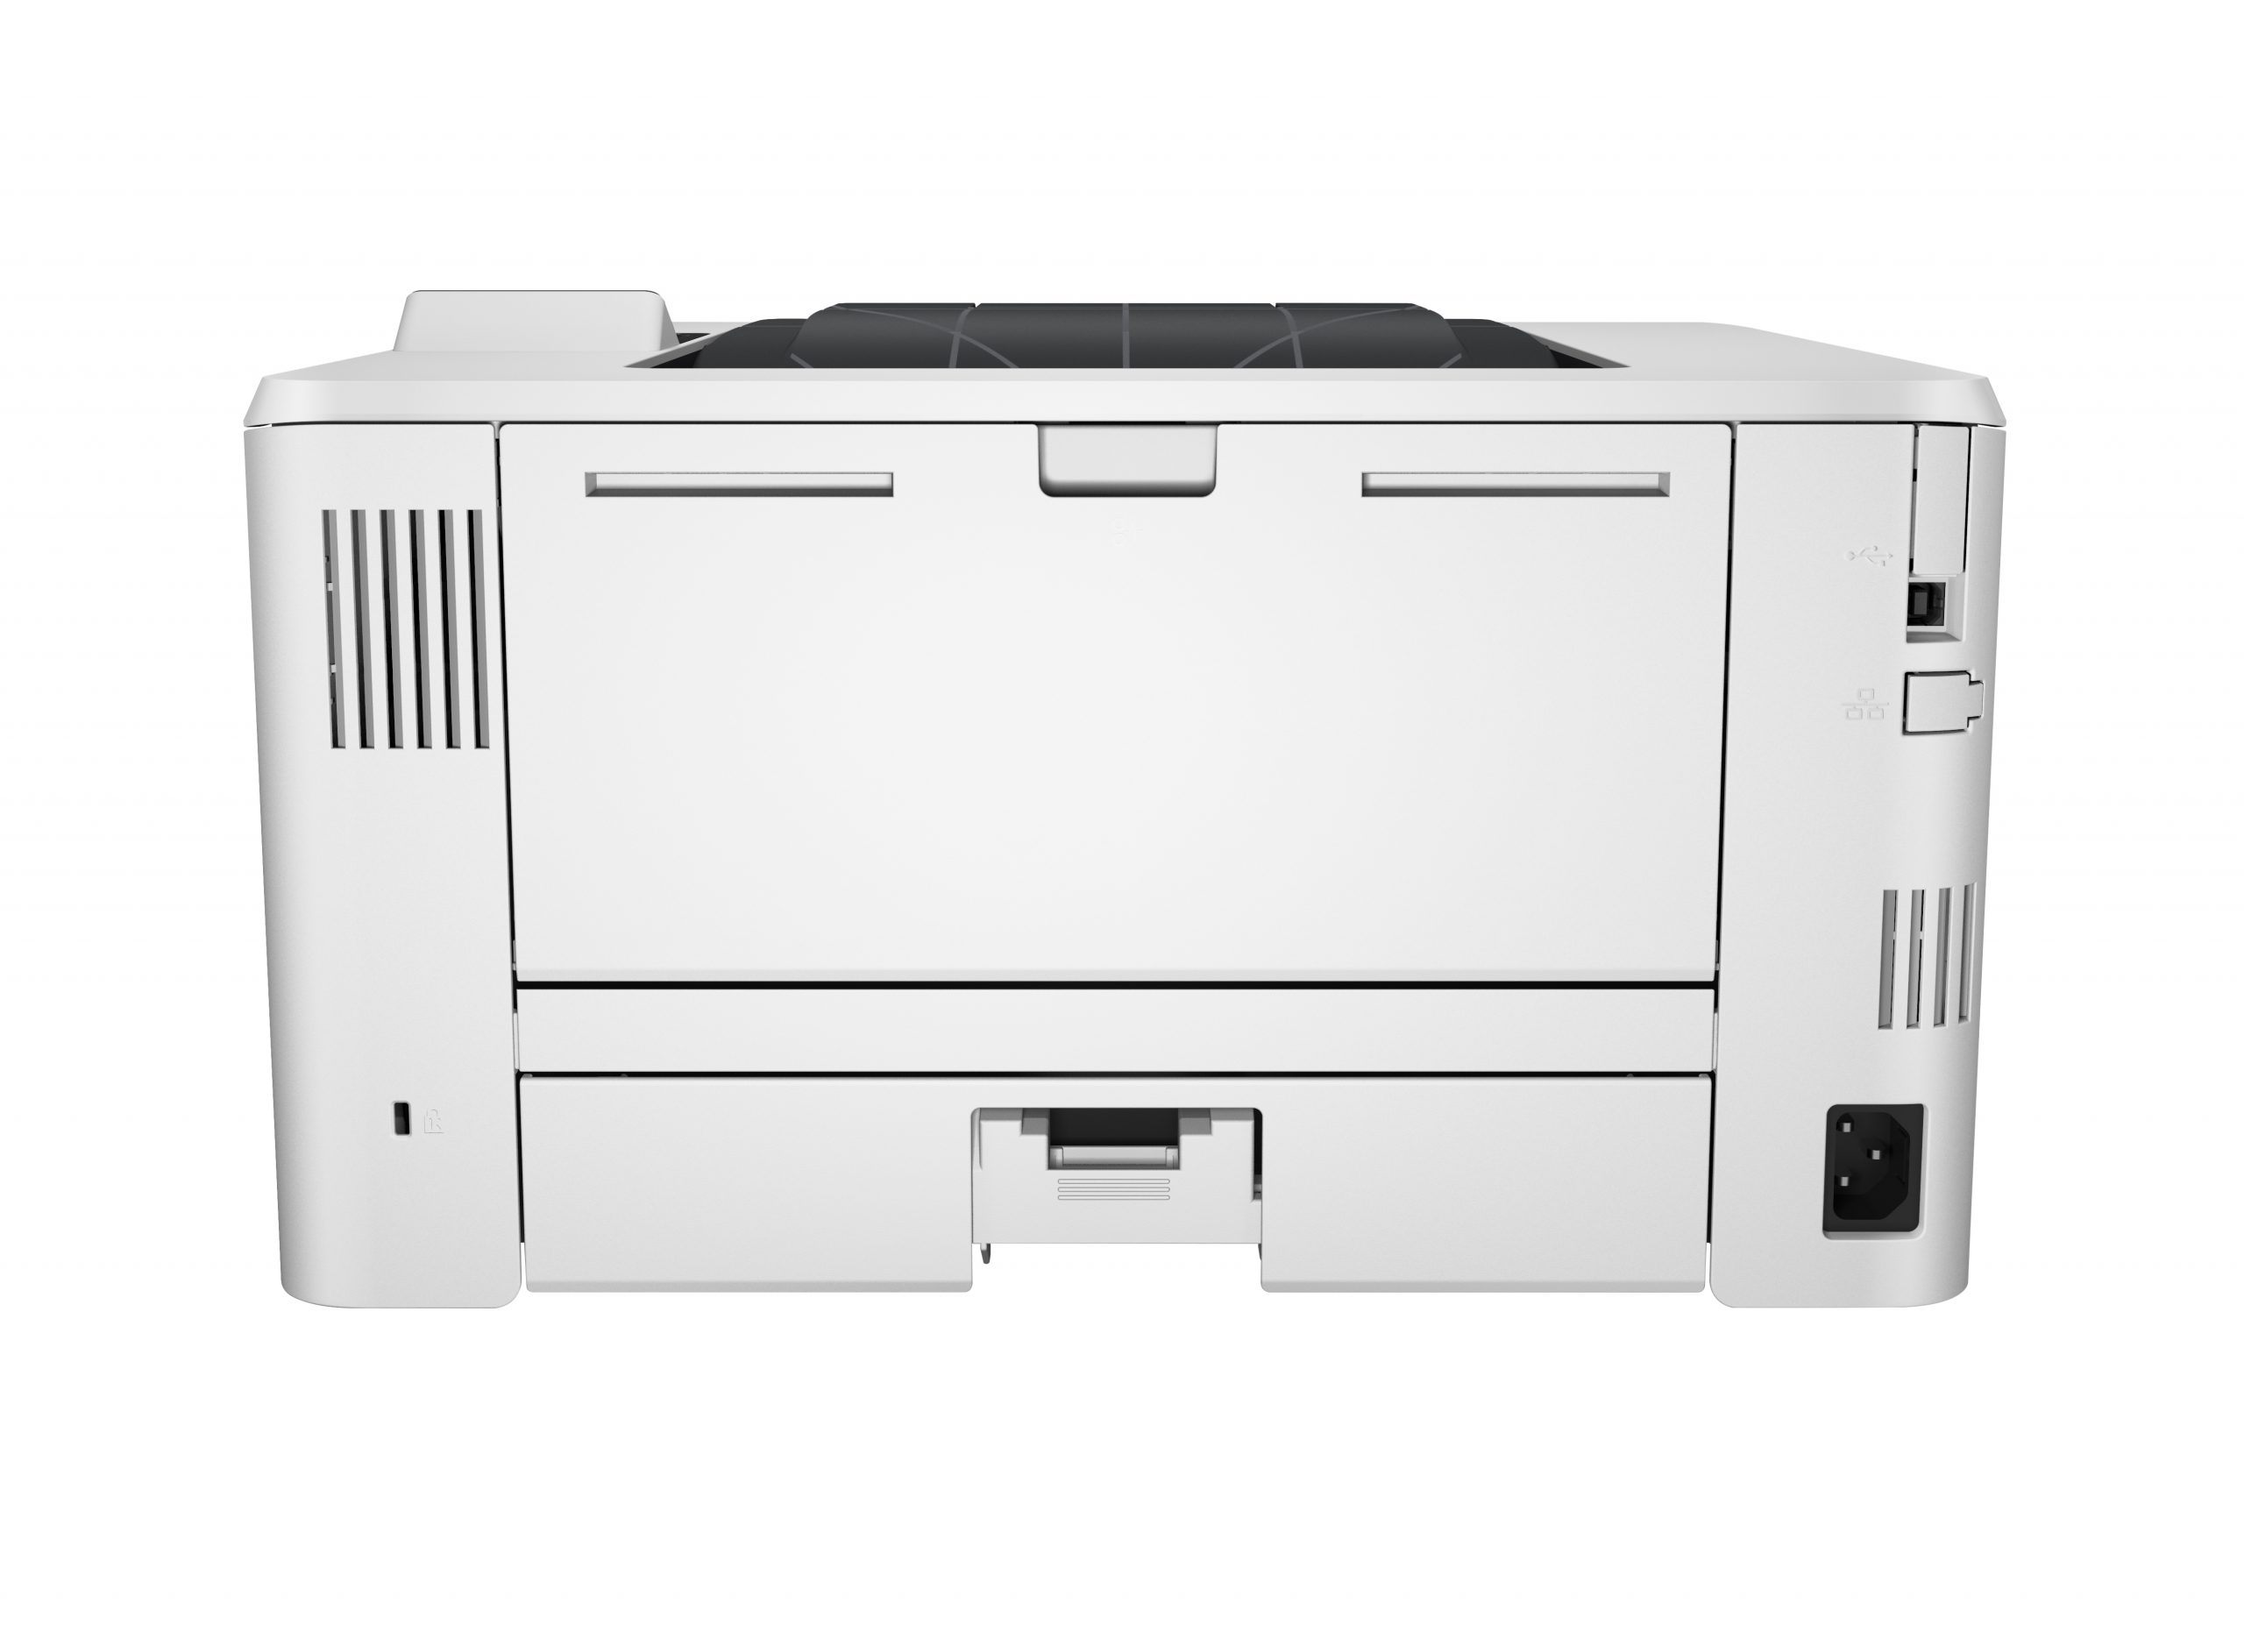 HP LaserJet Pro m402dn-c5f94a m402 Stampante A4 Monocromatica B/N CON DUPLEX E LAN